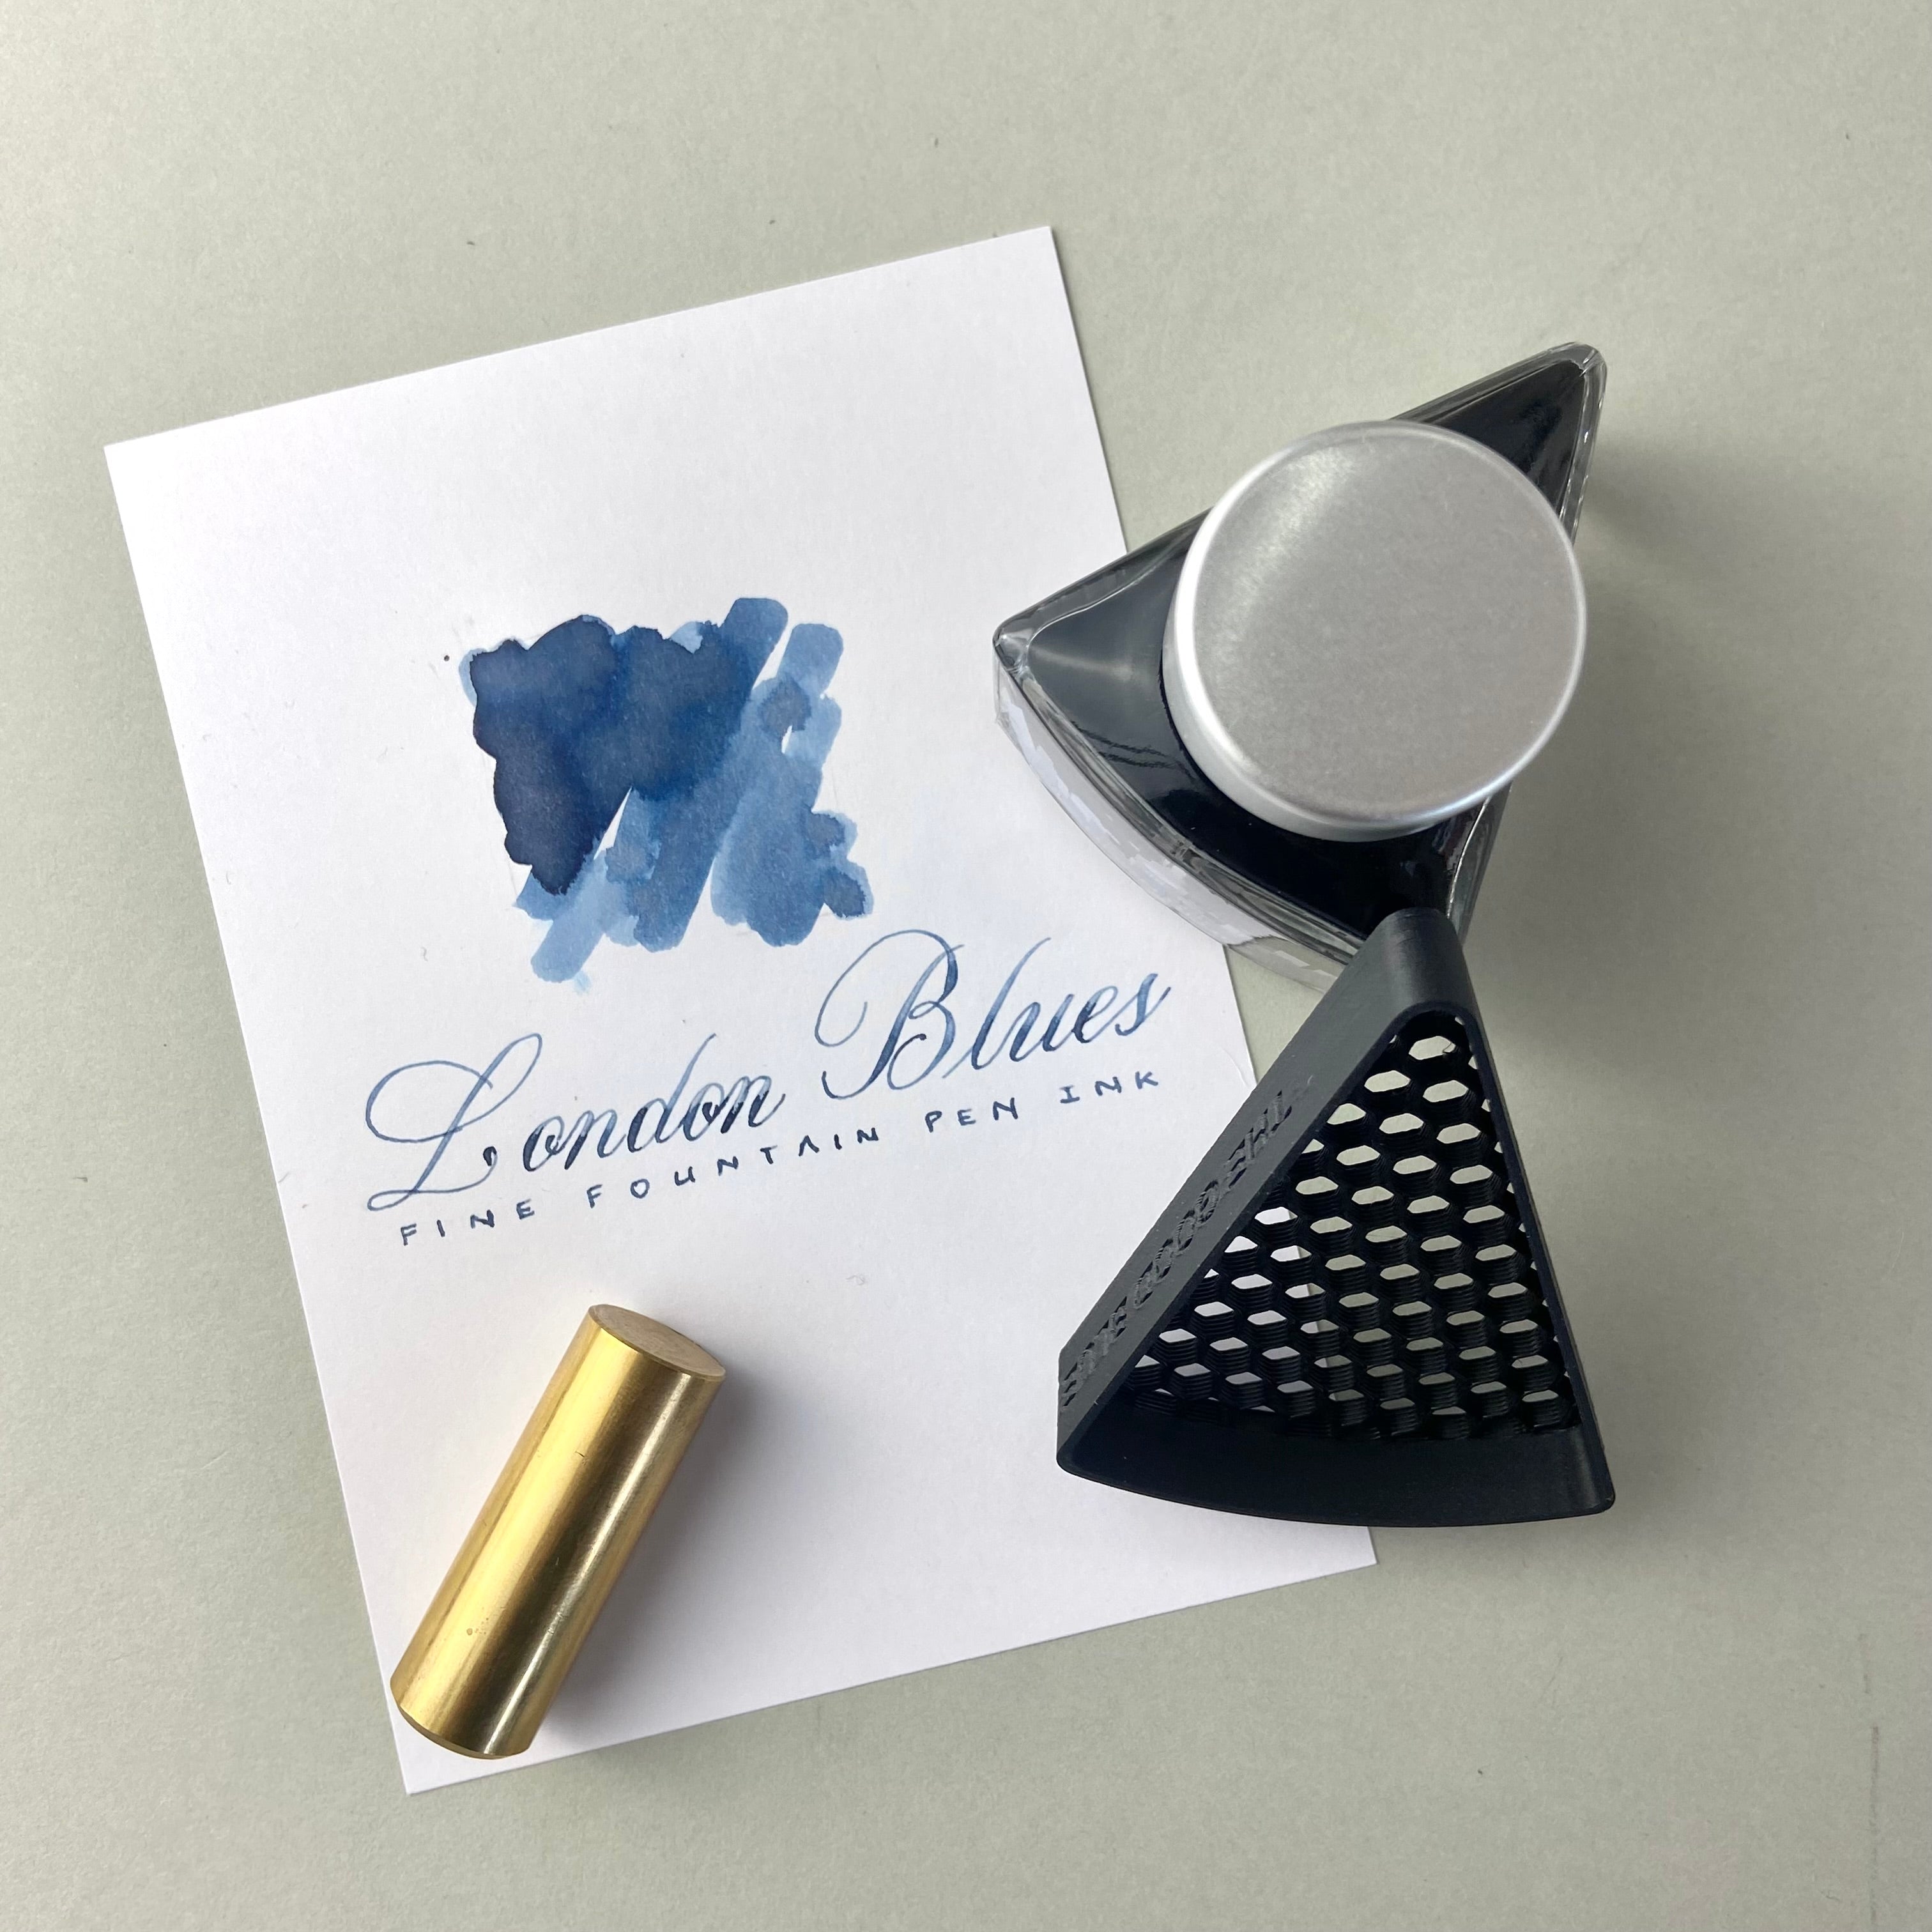 Flex nib fountain pens - The Good Blue